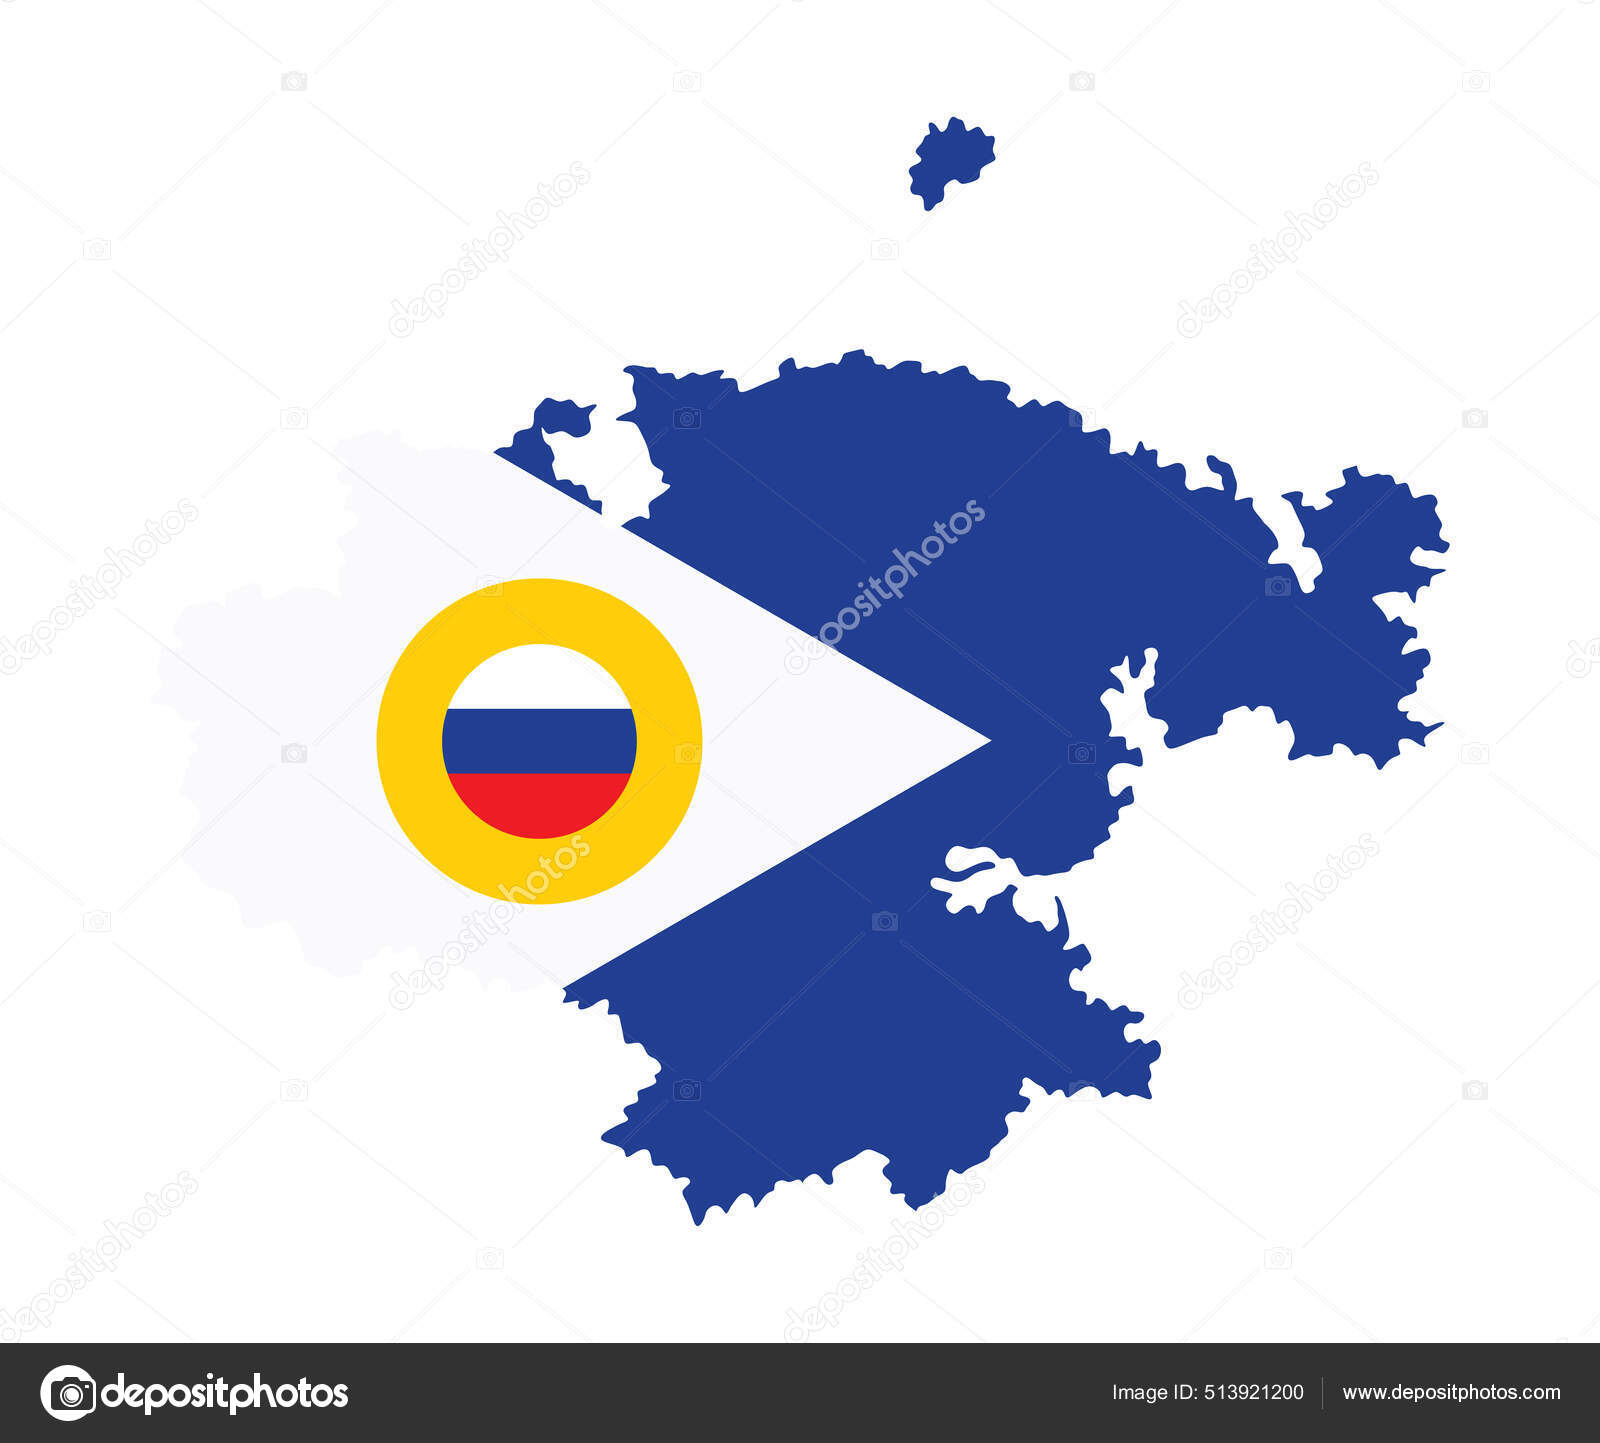 Bandeira portuguesa substituída por uma da federação russa em